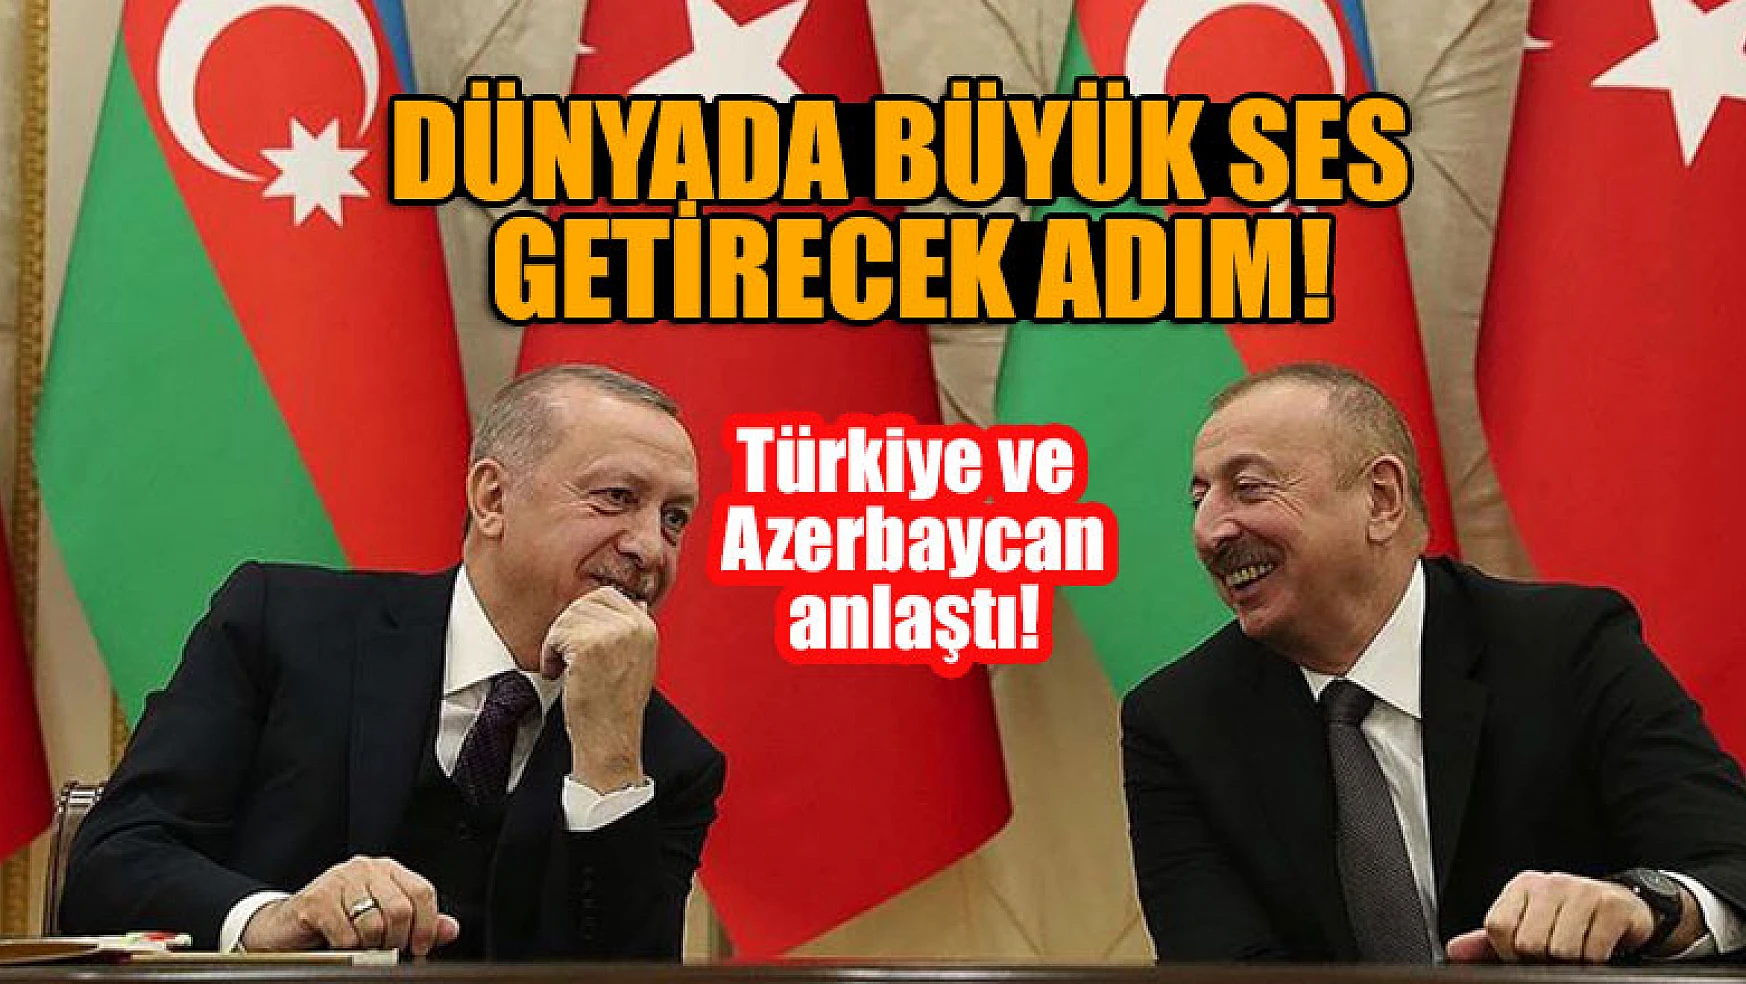 Türkiye ve Azerbaycan anlaştı! Dünyada büyük ses getirecek adım atıldı